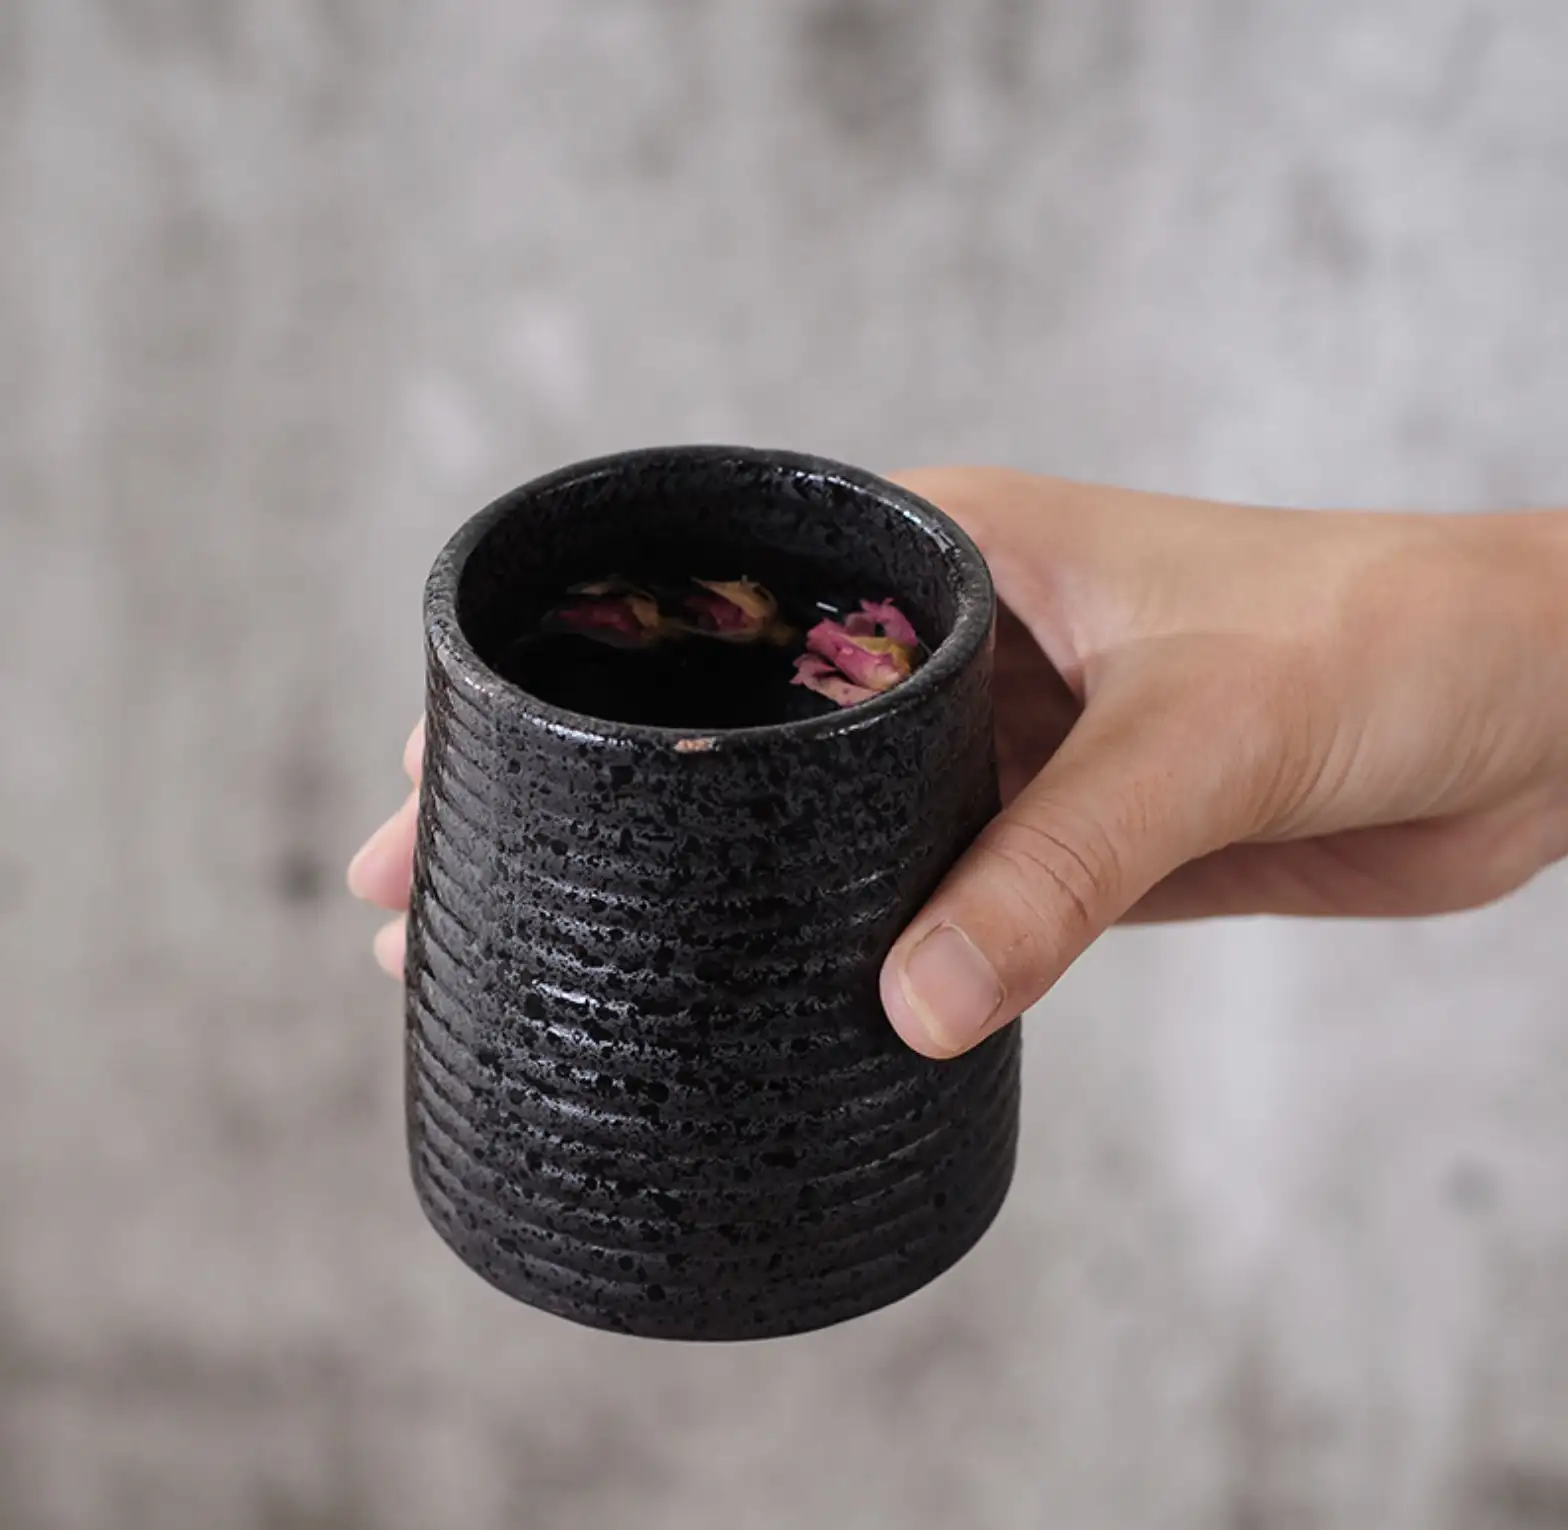 Juego de tazas de porcelana de buena calidad, Taza de cerámica japonesa, tazas Vintage, té ecológico